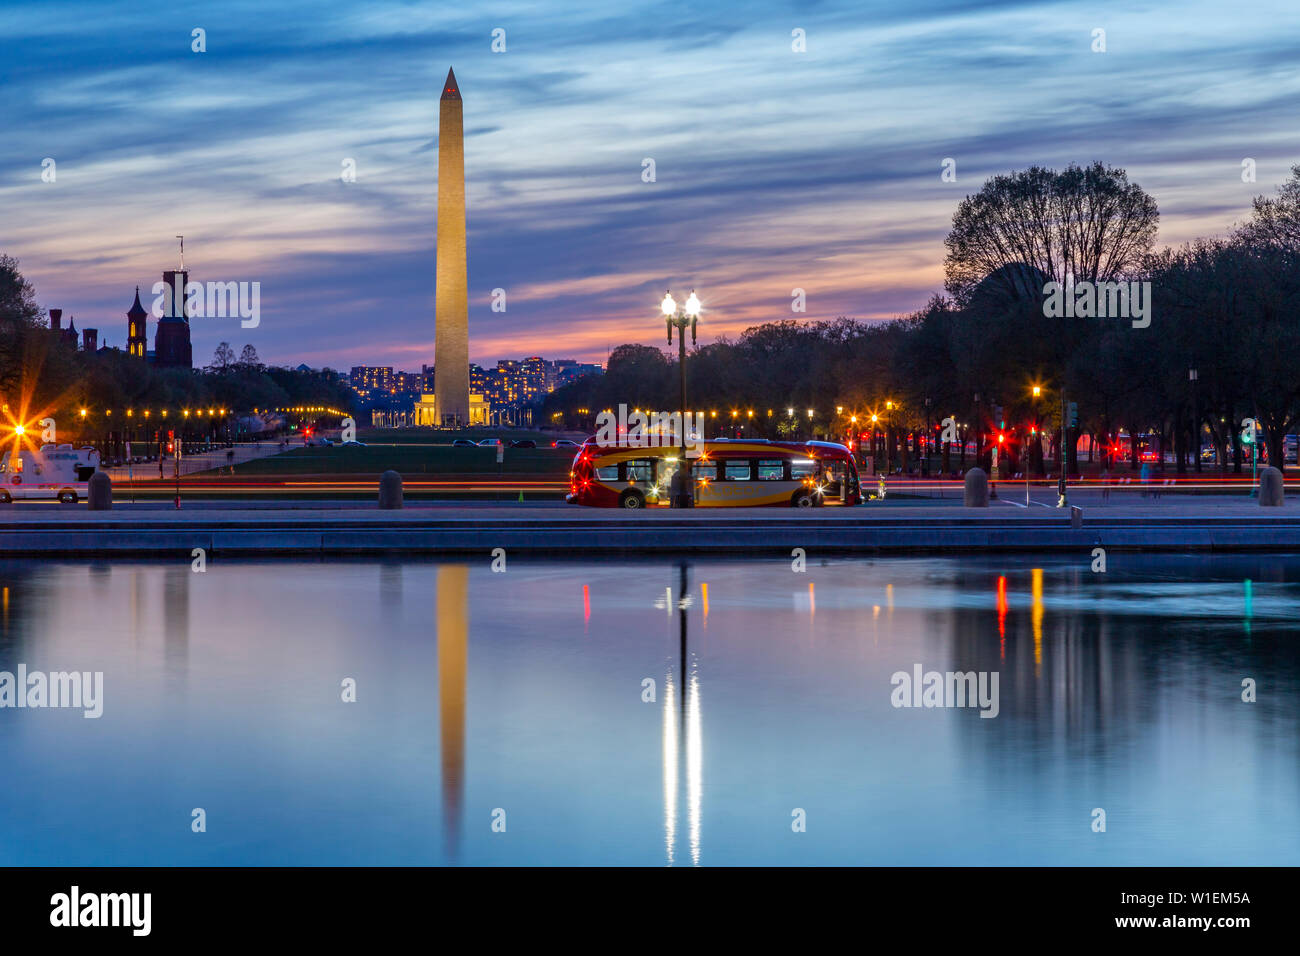 Vista del Monumento a Washington e il National Mall al tramonto, Washington D.C., Stati Uniti d'America, America del Nord Foto Stock